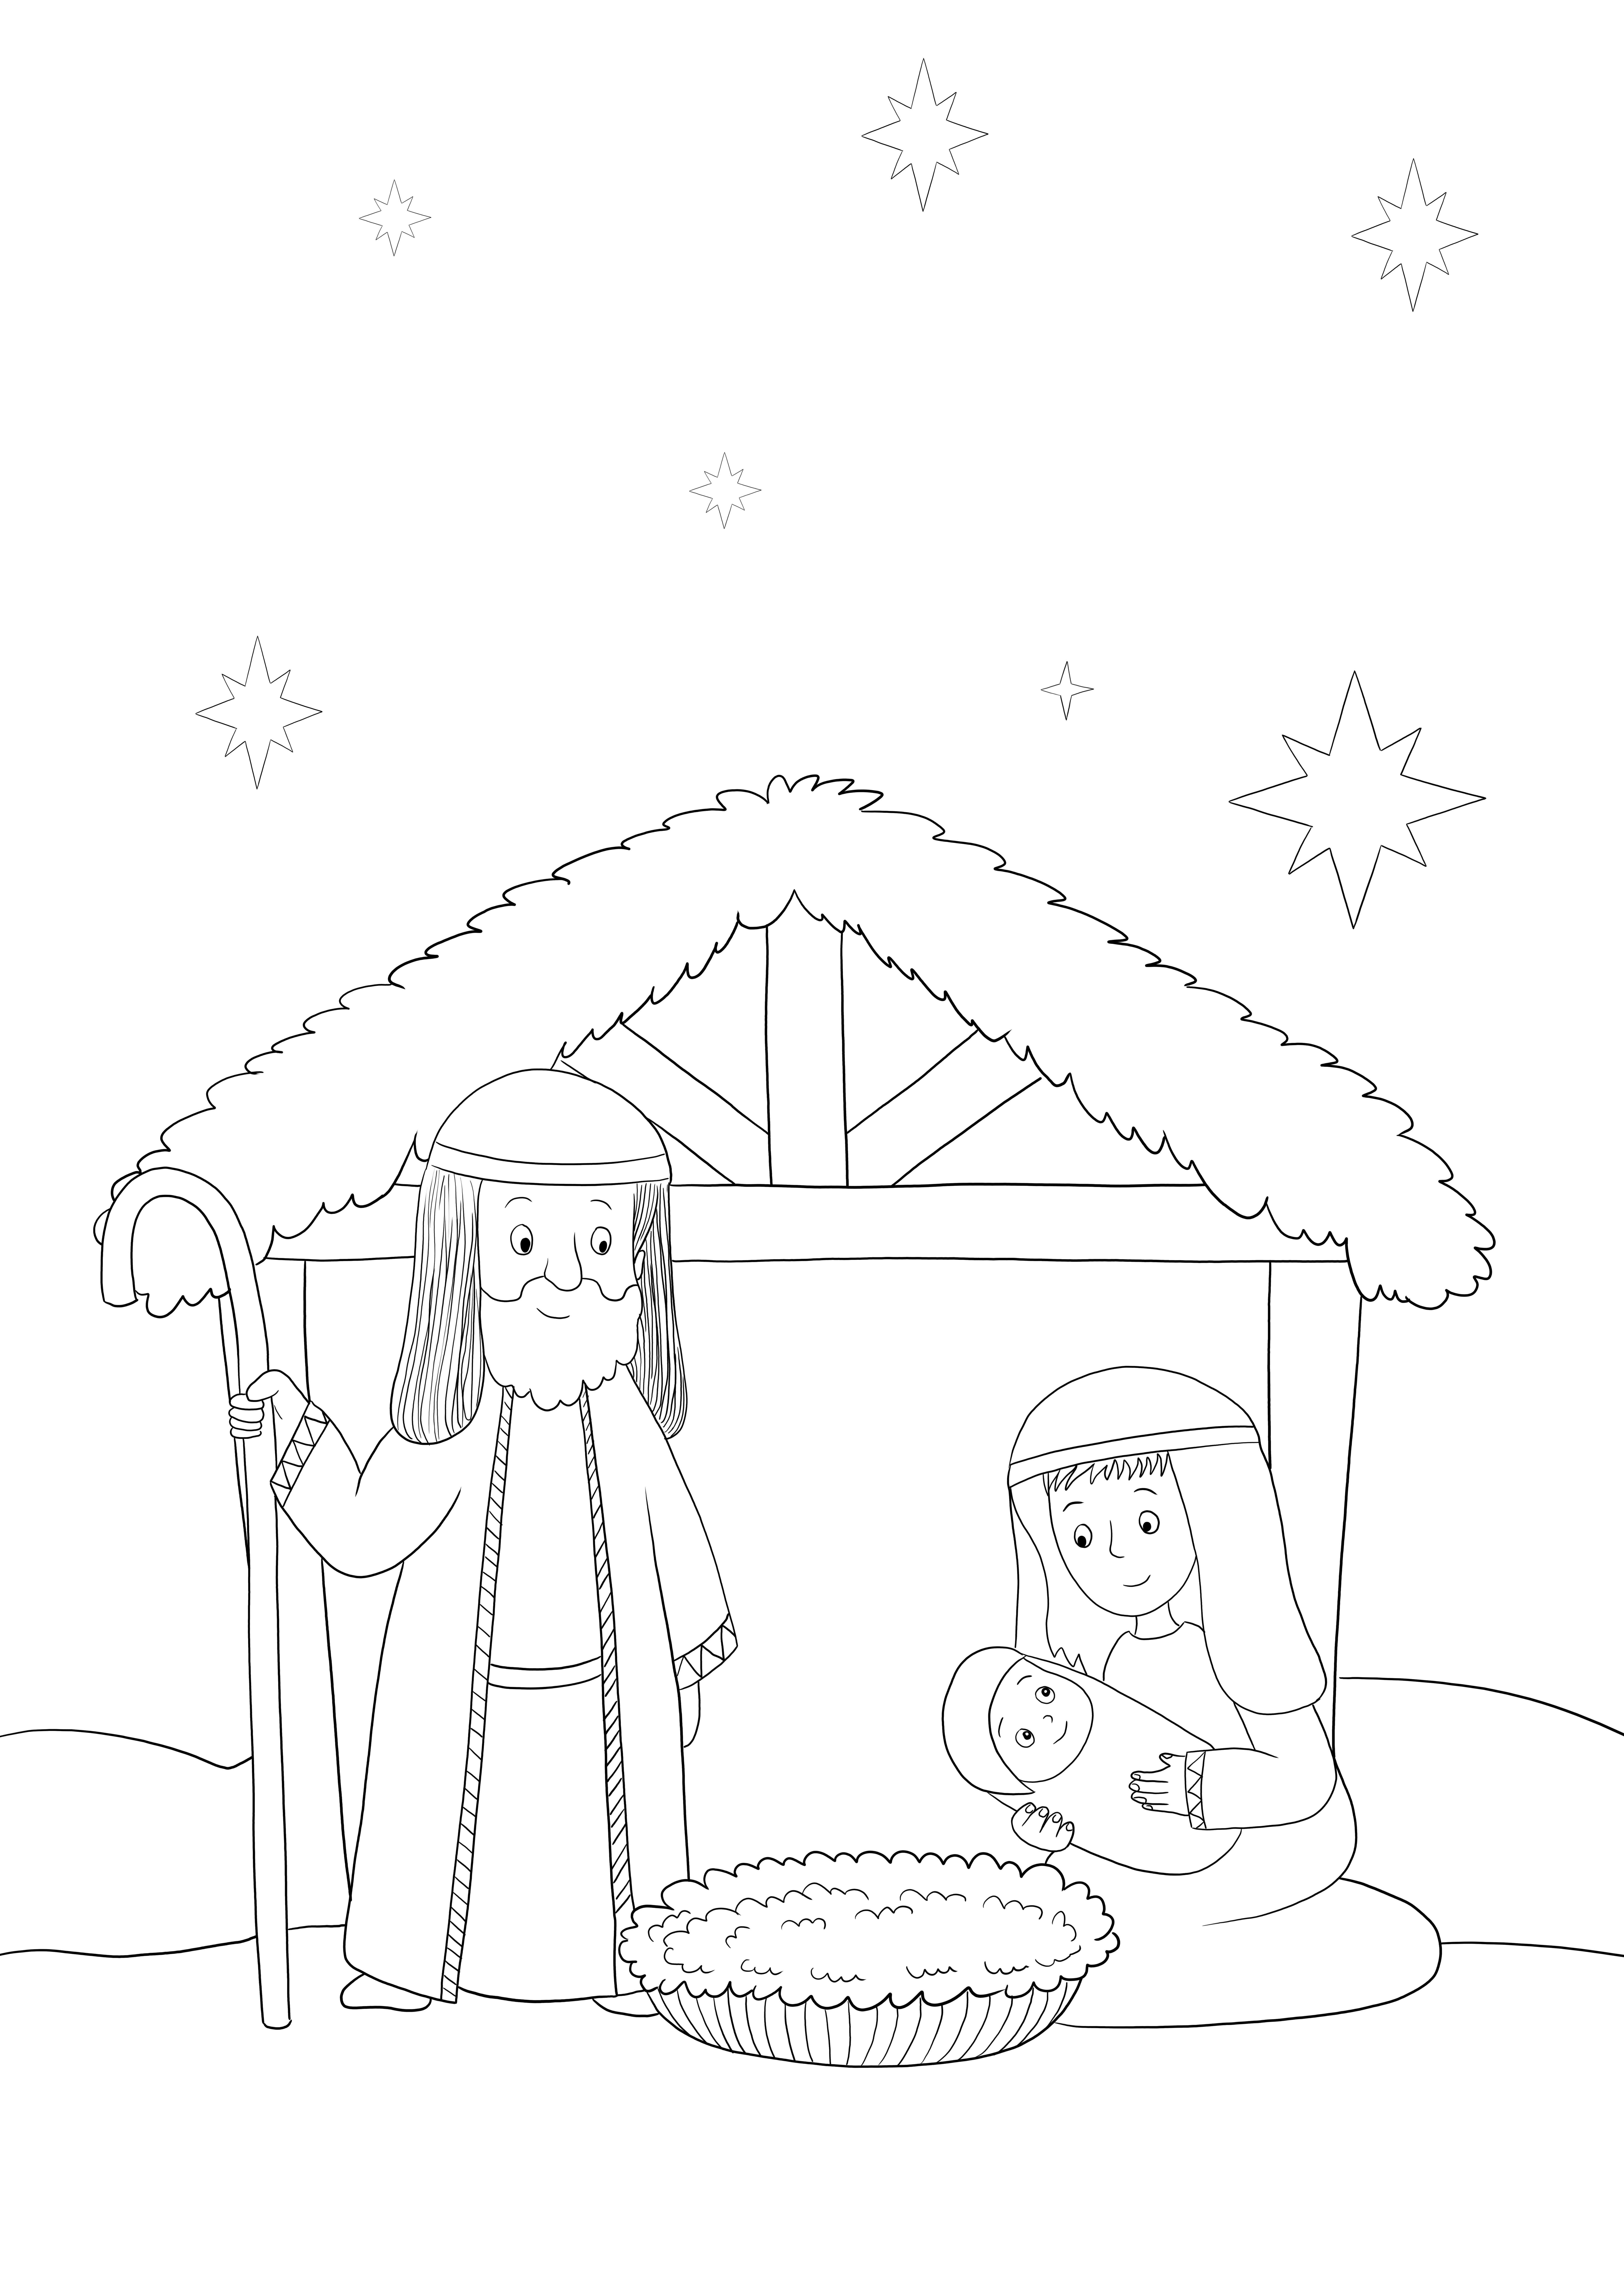 キリスト降誕の物語は、子供向けに無料で印刷またはダウンロードして色付けできます